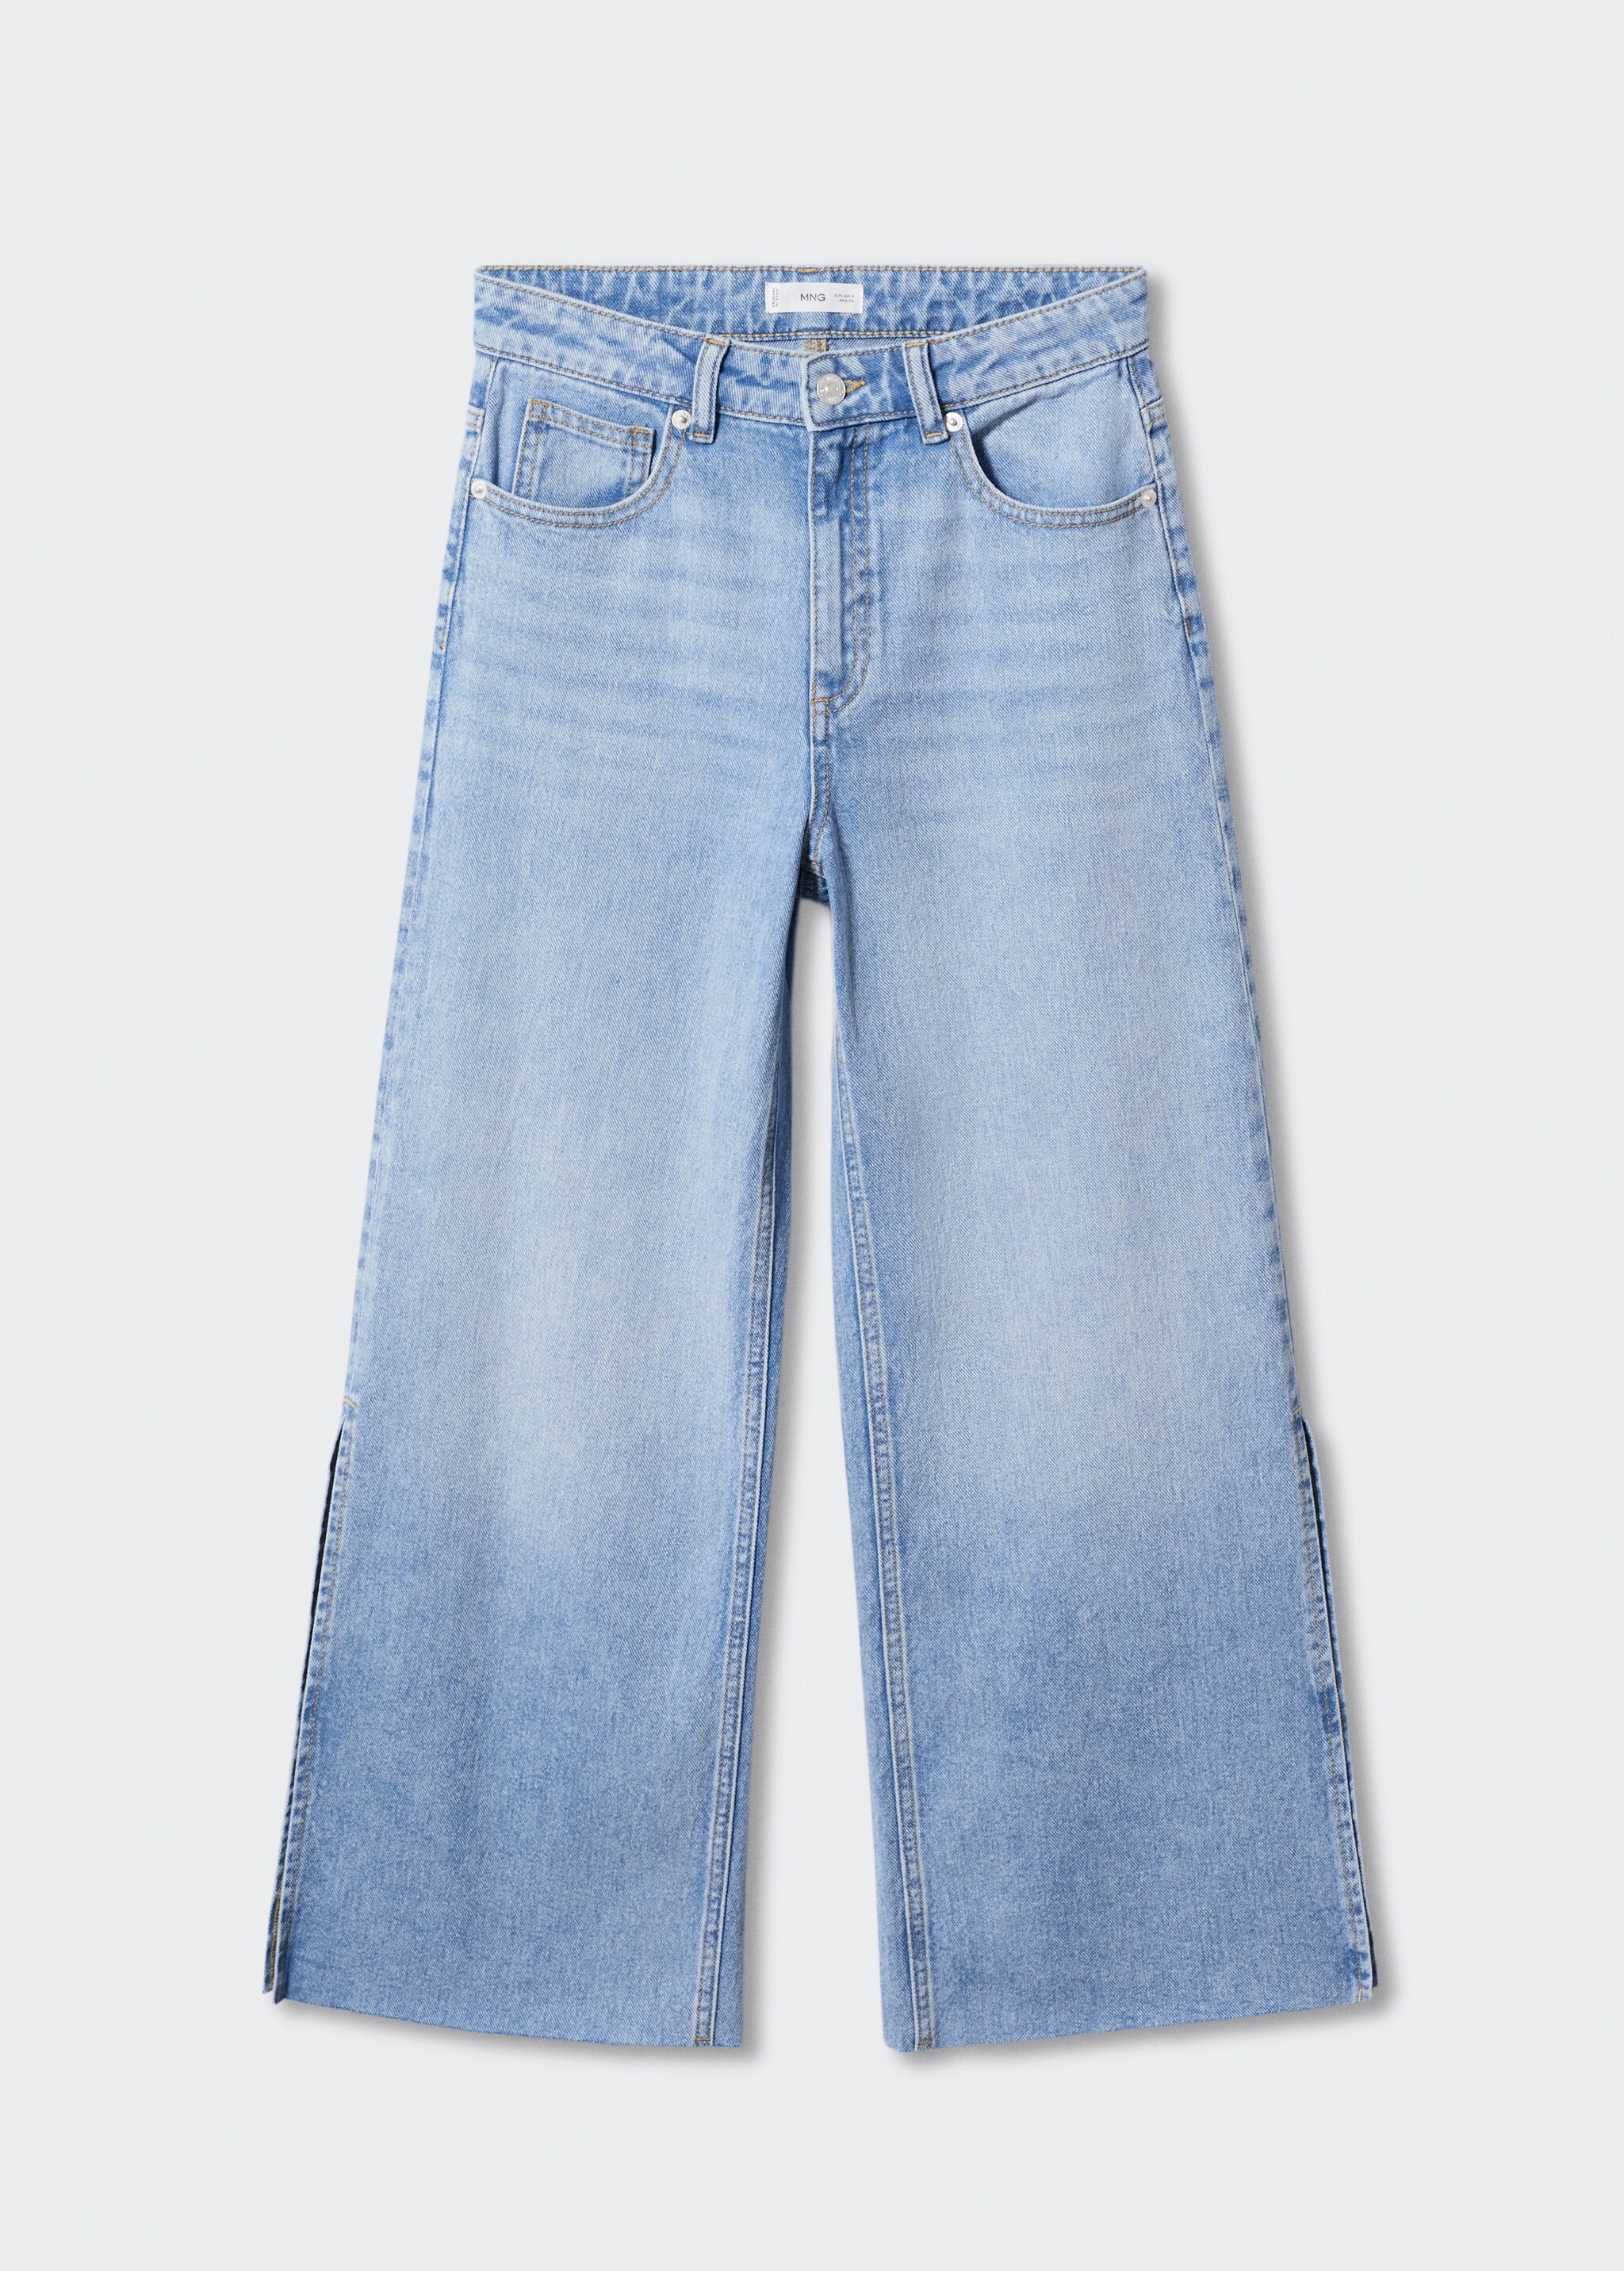 Jeans culotte aberturas - Artículo sin modelo